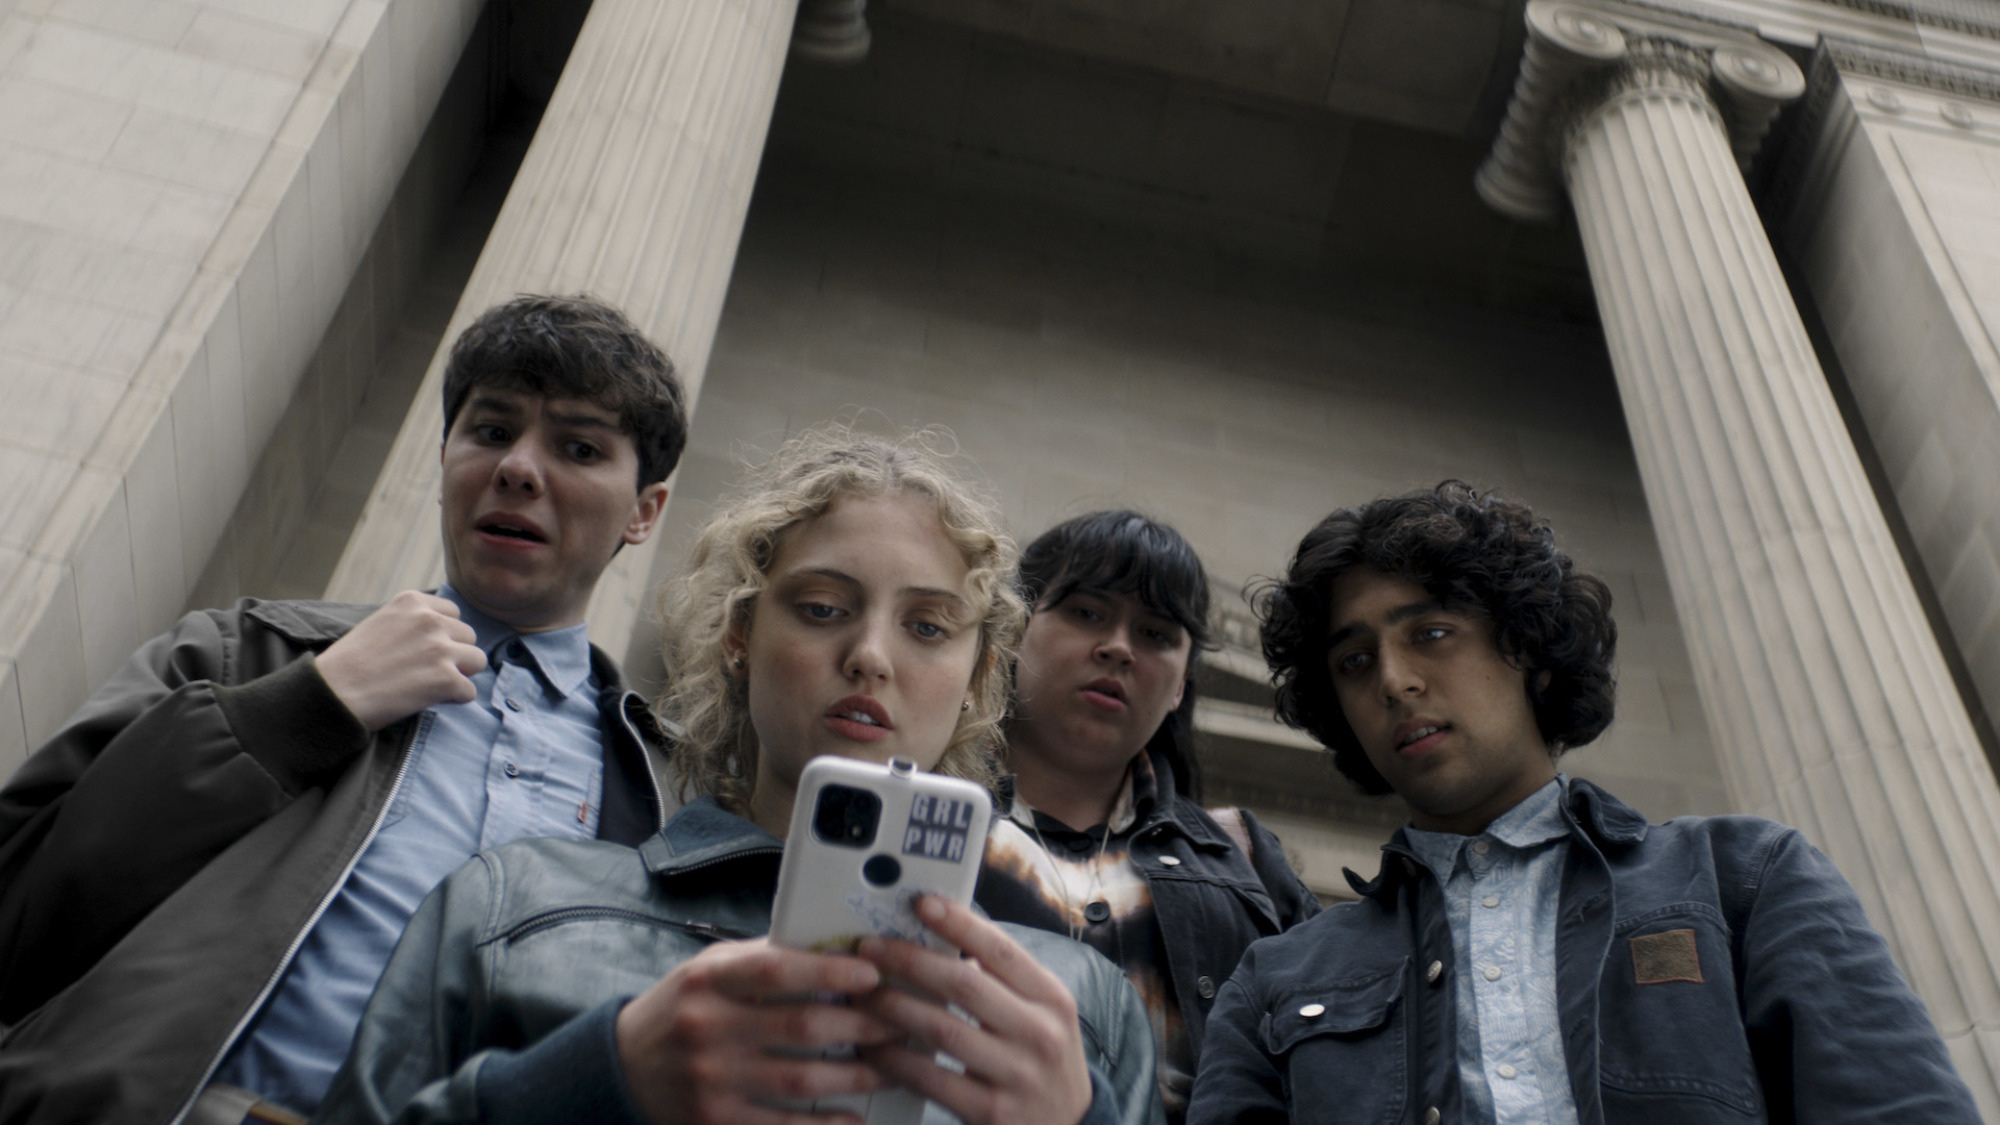 Un groupe d'adolescents se rassemble devant les colonnes d'un bâtiment gouvernemental, autour d'une adolescente utilisant son téléphone.